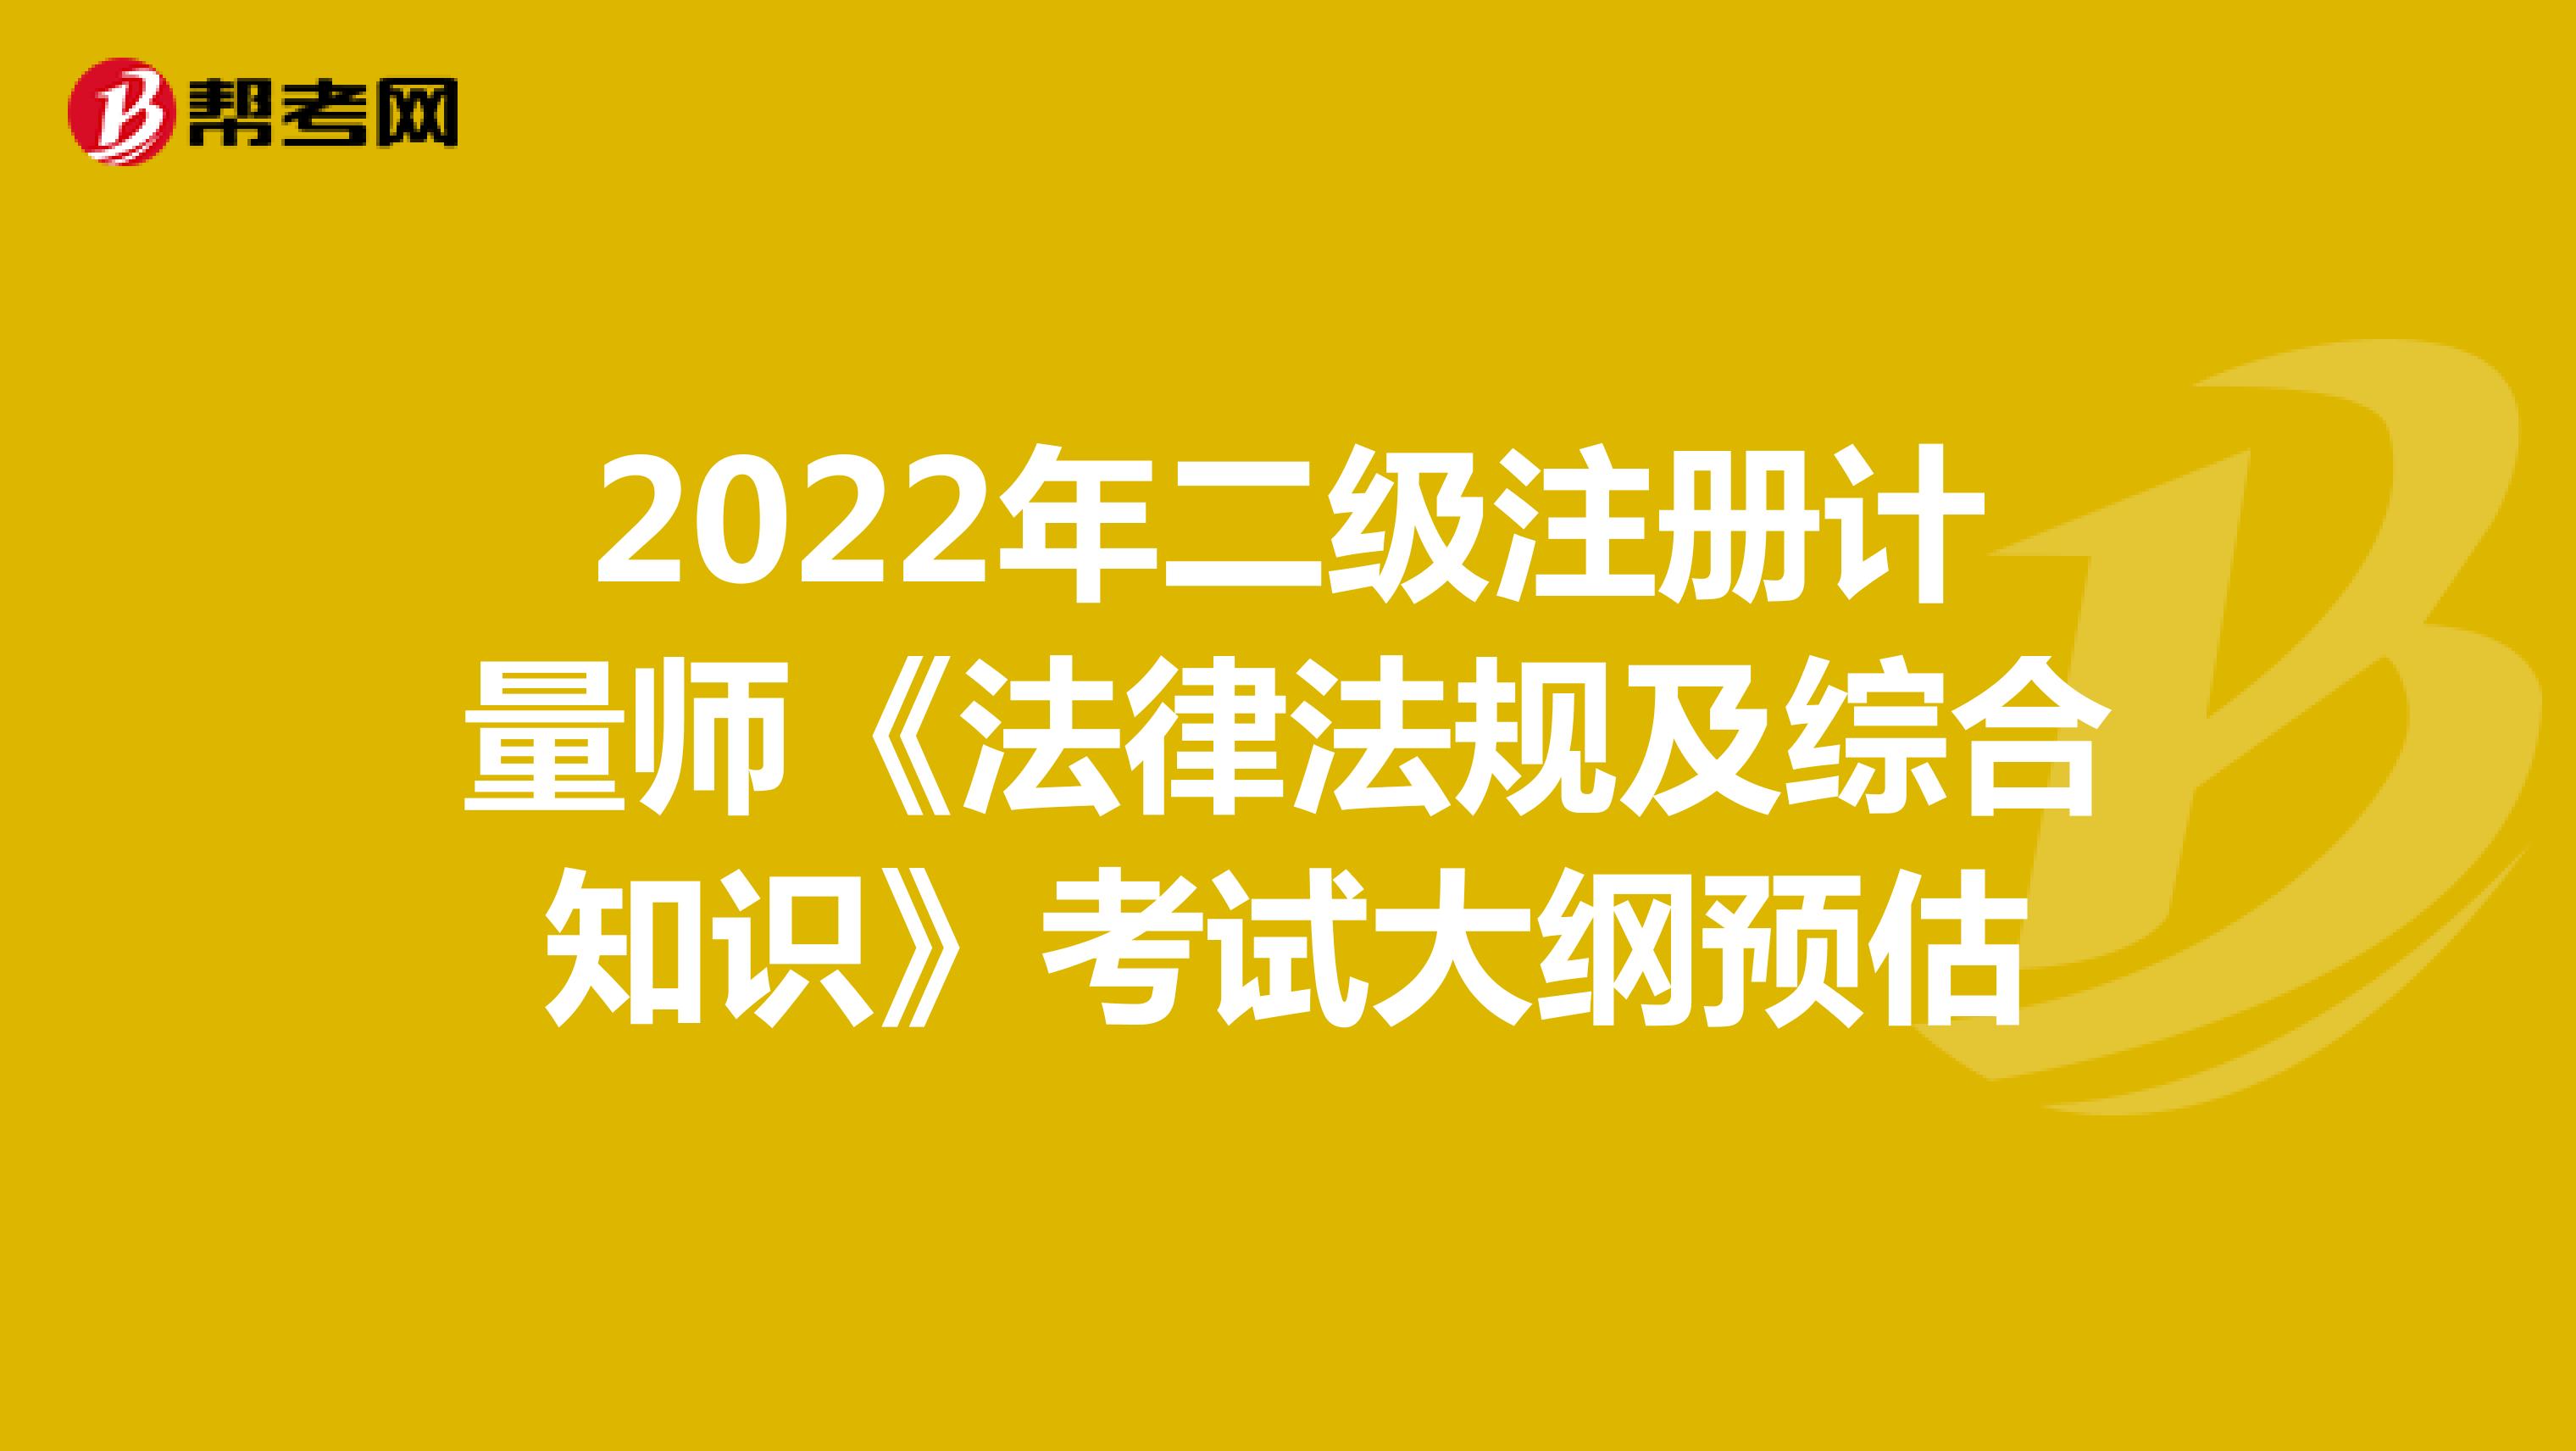 2022年二级注册计量师《法律法规及综合知识》考试大纲预估